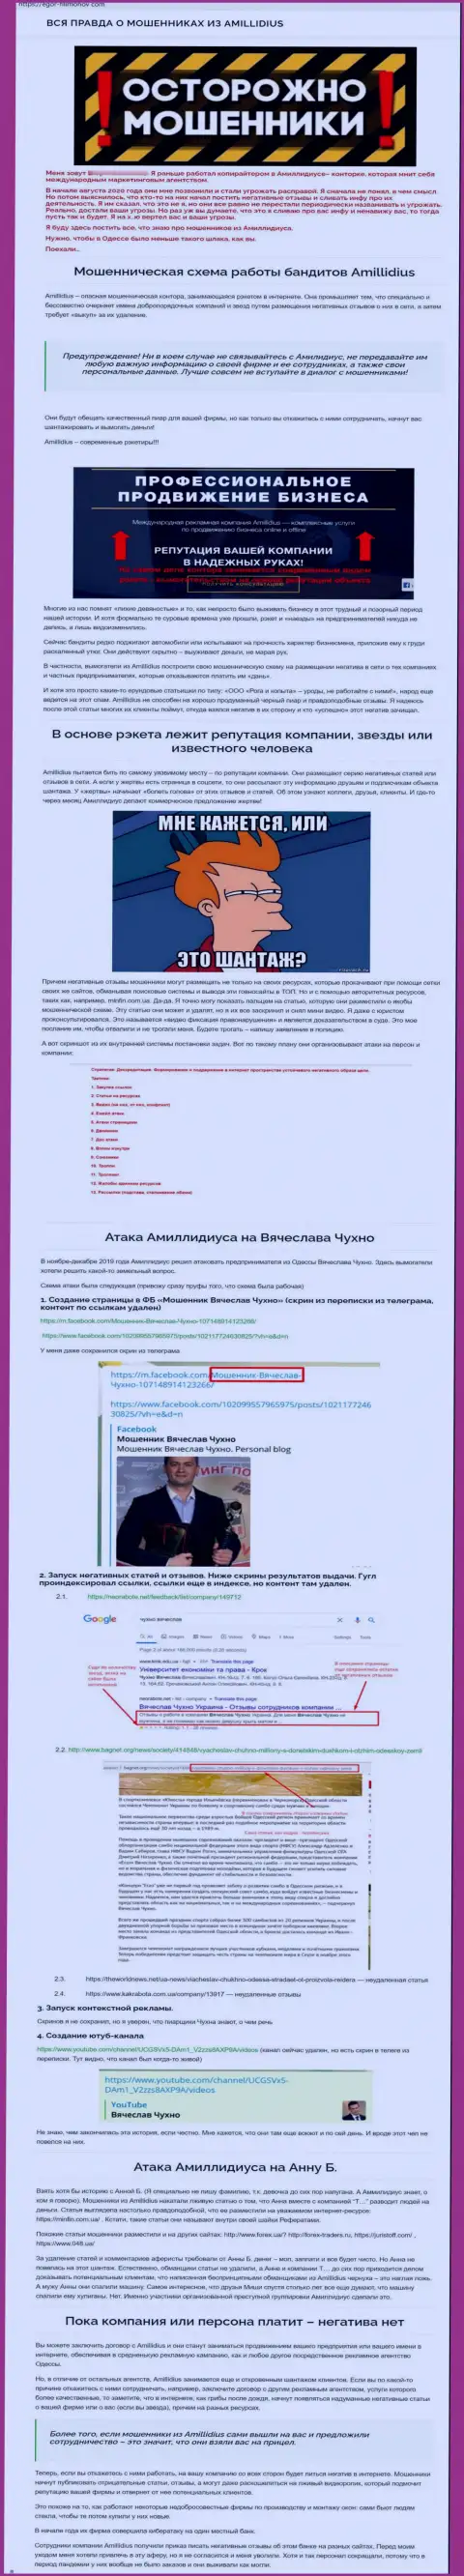 Отзыв о деяниях пиар-фирмы Амиллидиус, во главе которой Богдан Терзи